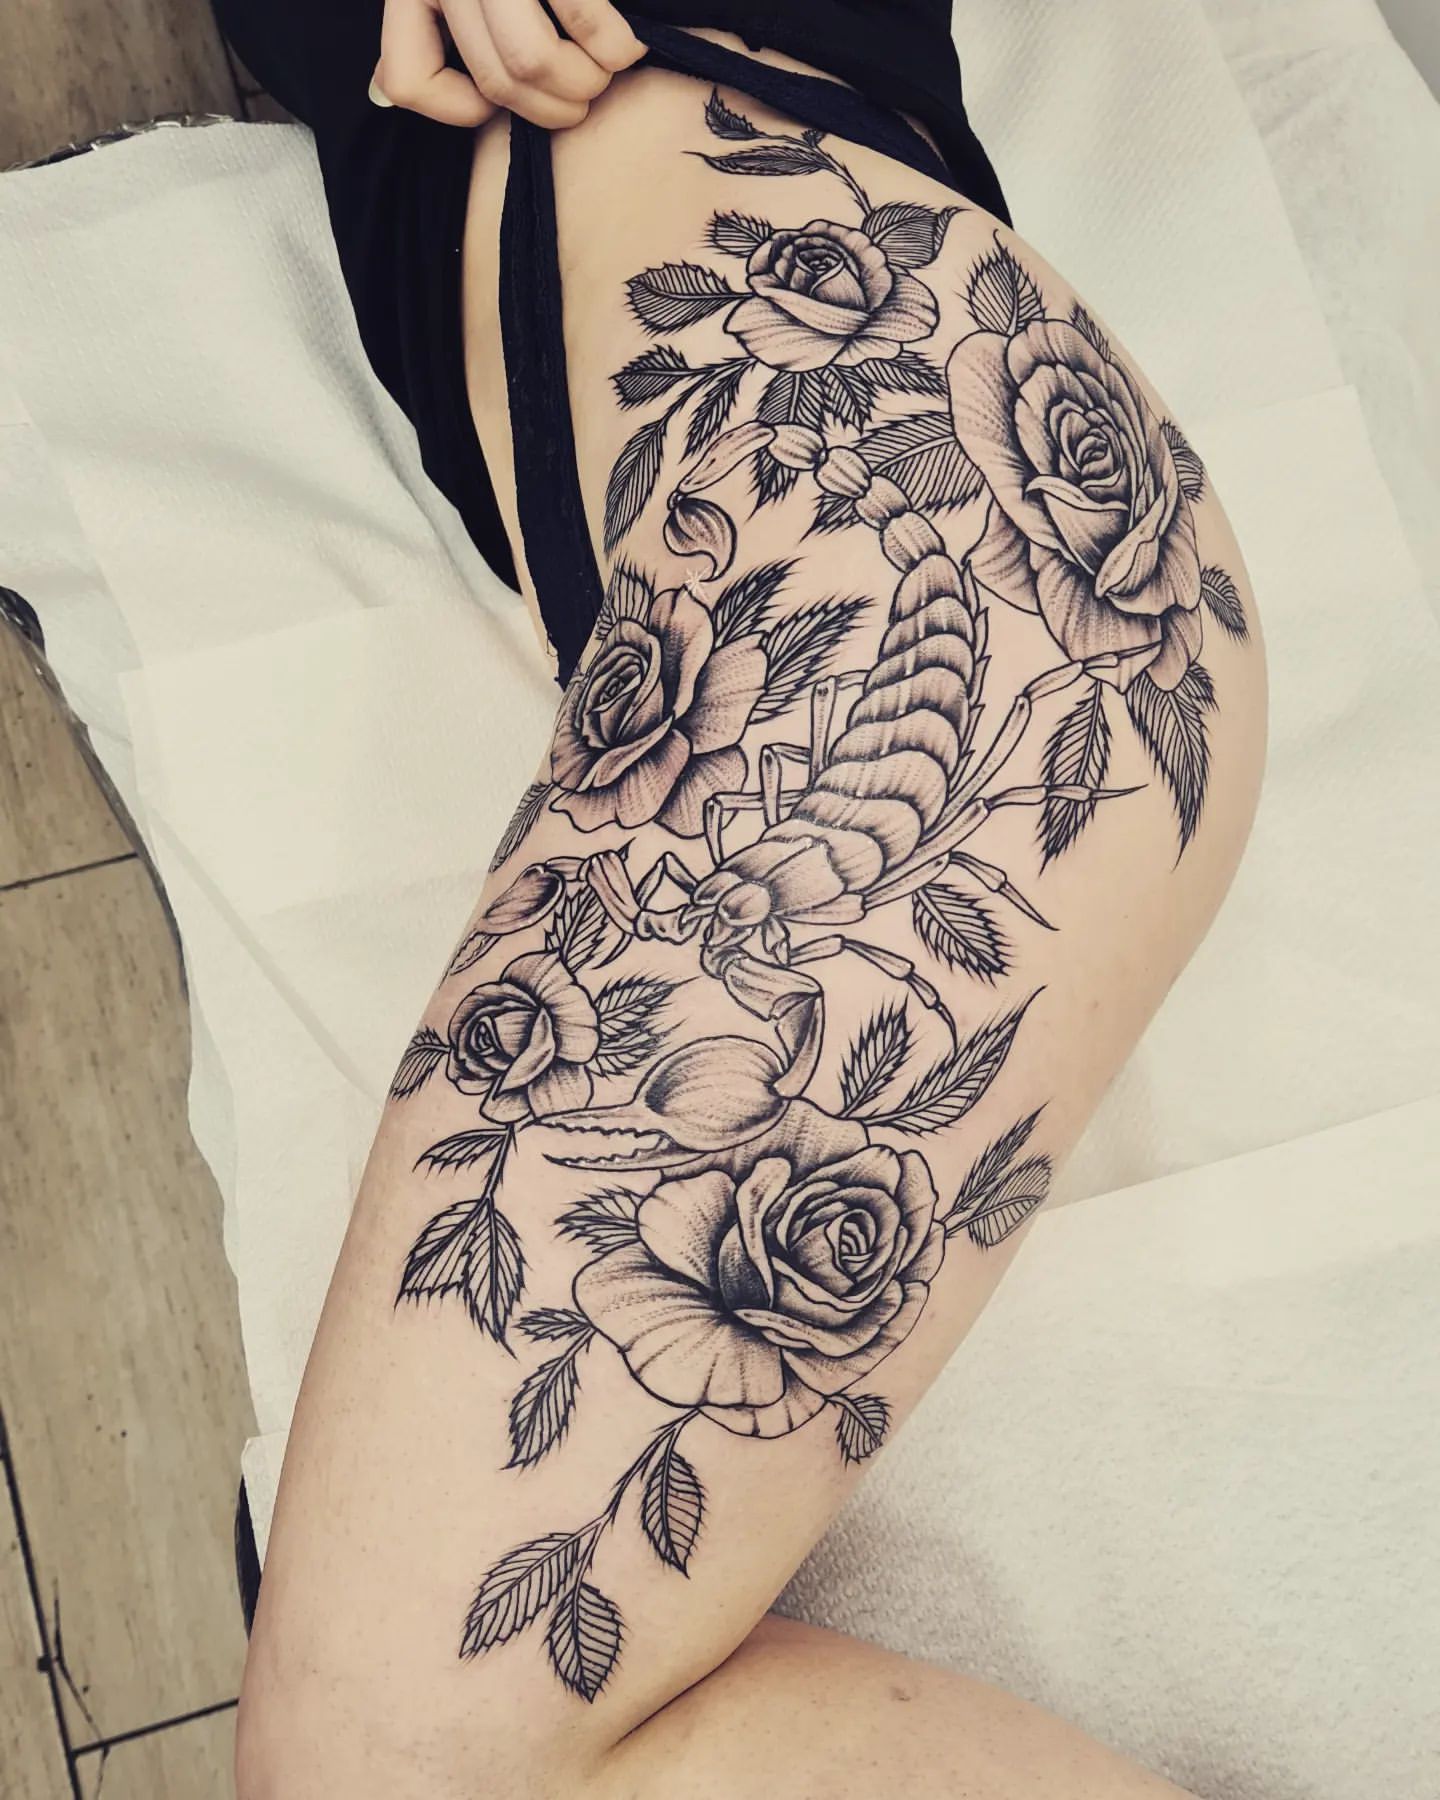 Leg Tattoo Ideas, thigh tattoo